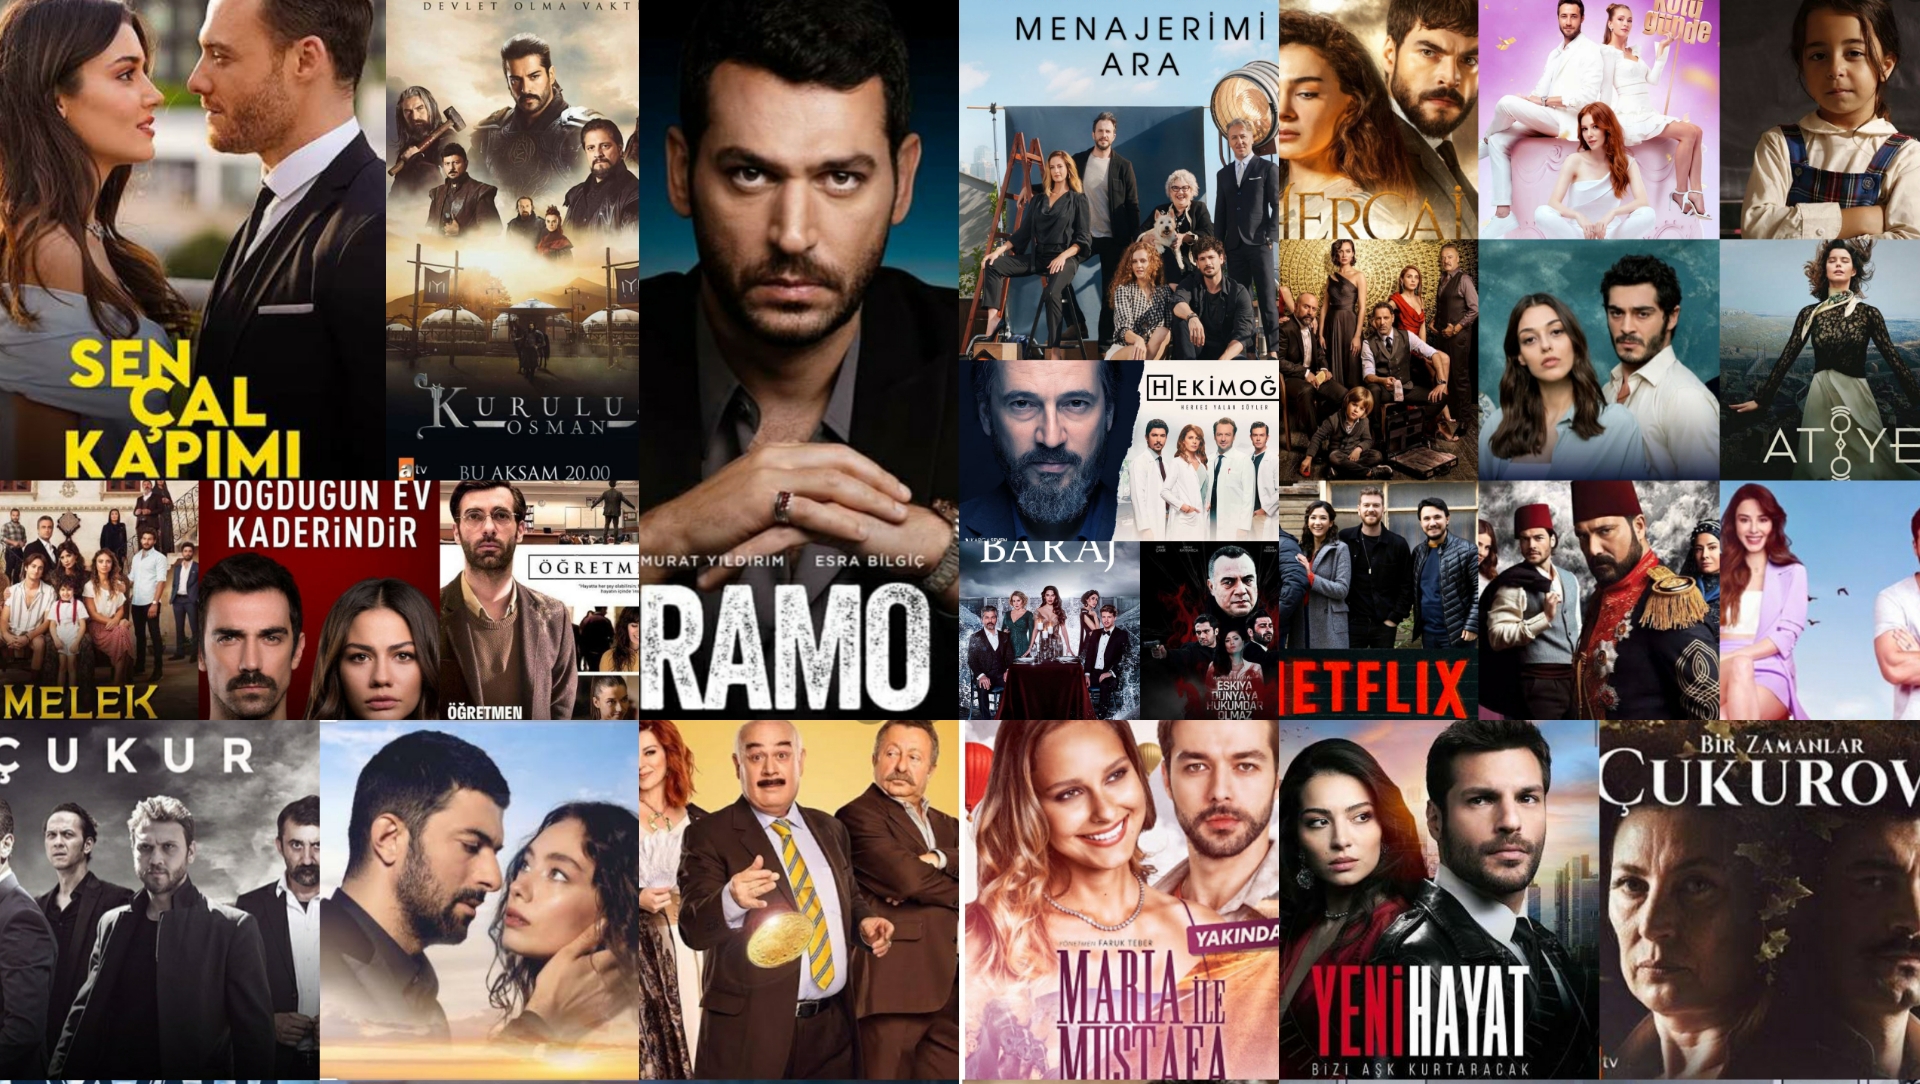 أعلن الموقع الرسمي لتلفزيون دبي عن عودة عرض المسلسلات التركية عبر قنواتها وذلك من خلال ترويجها للمسلسل التركي البحر الاسود .